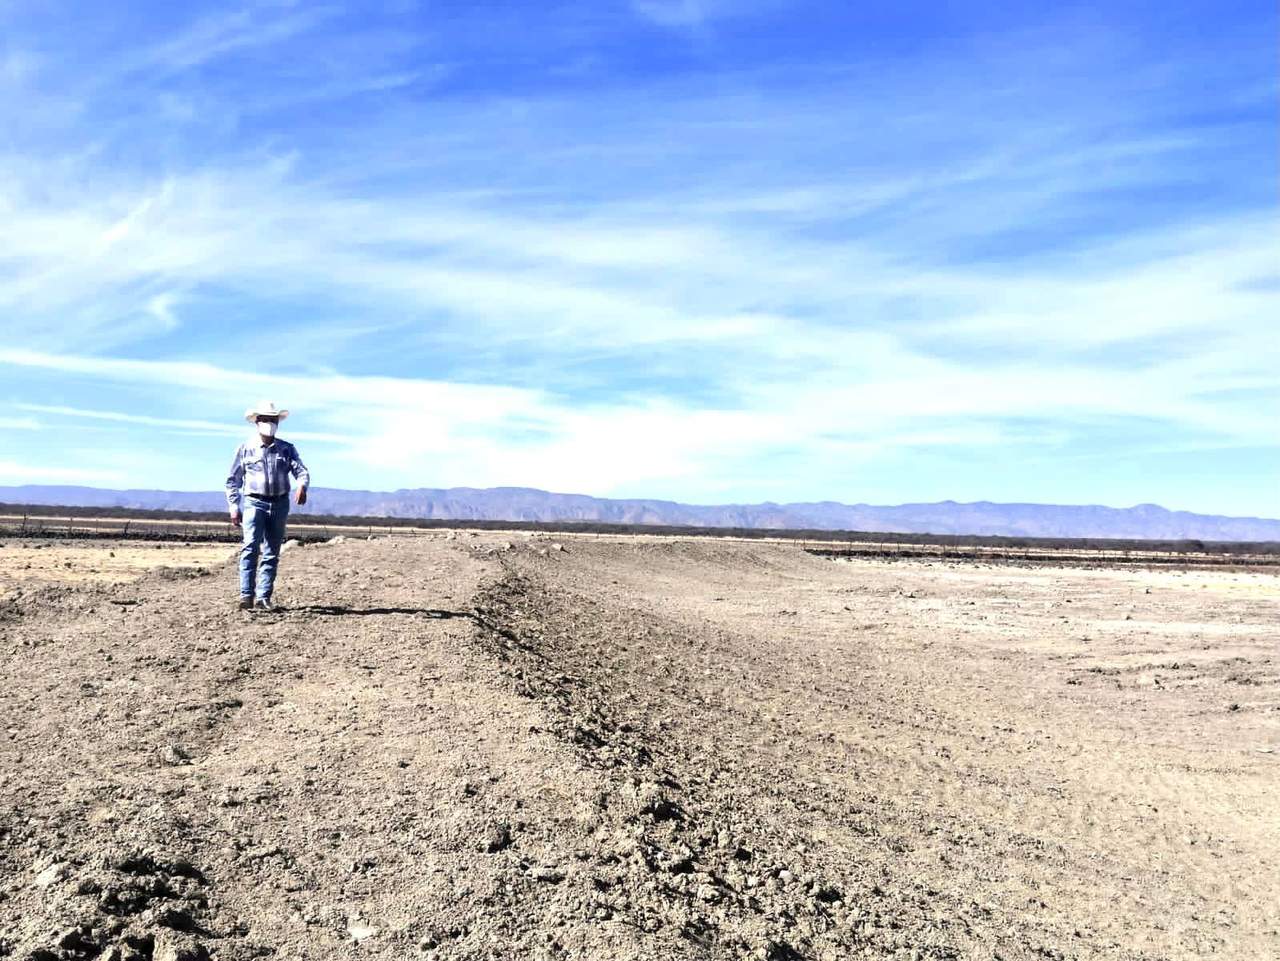 Sequía no ha causado daños graves en el municipio de Durango: Alcalde